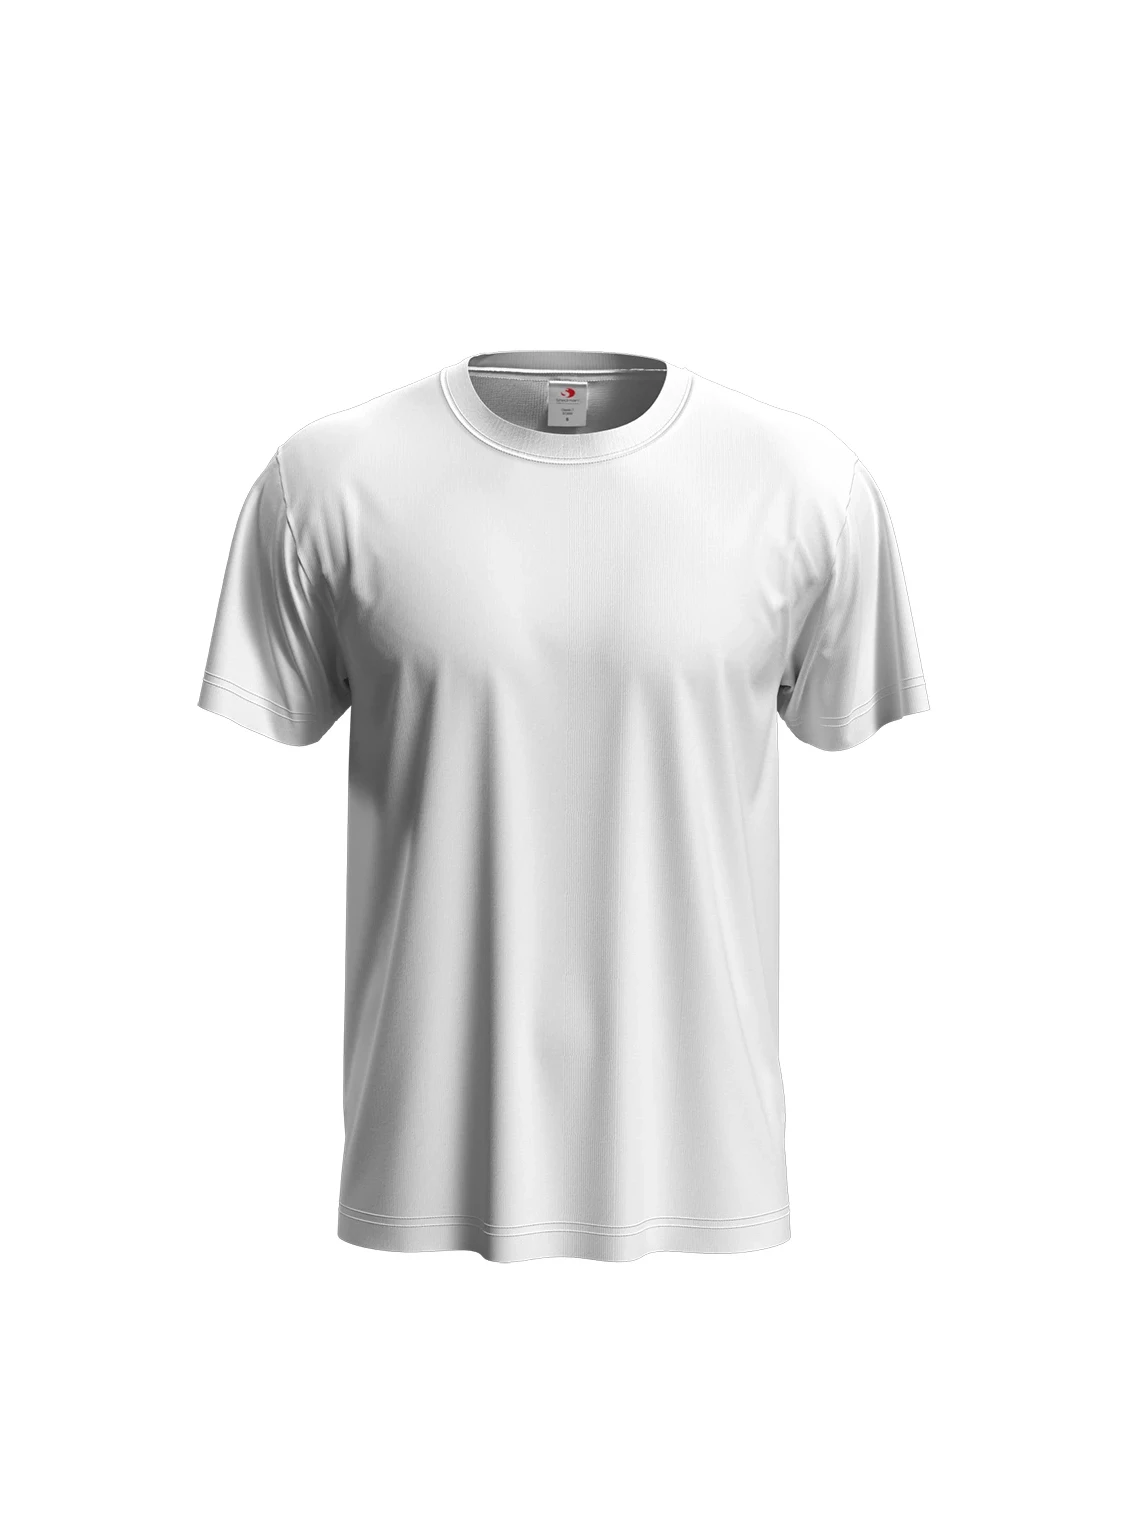 Koszulka T-shirt z nadrukiem ST2000 Classic-T Stedman